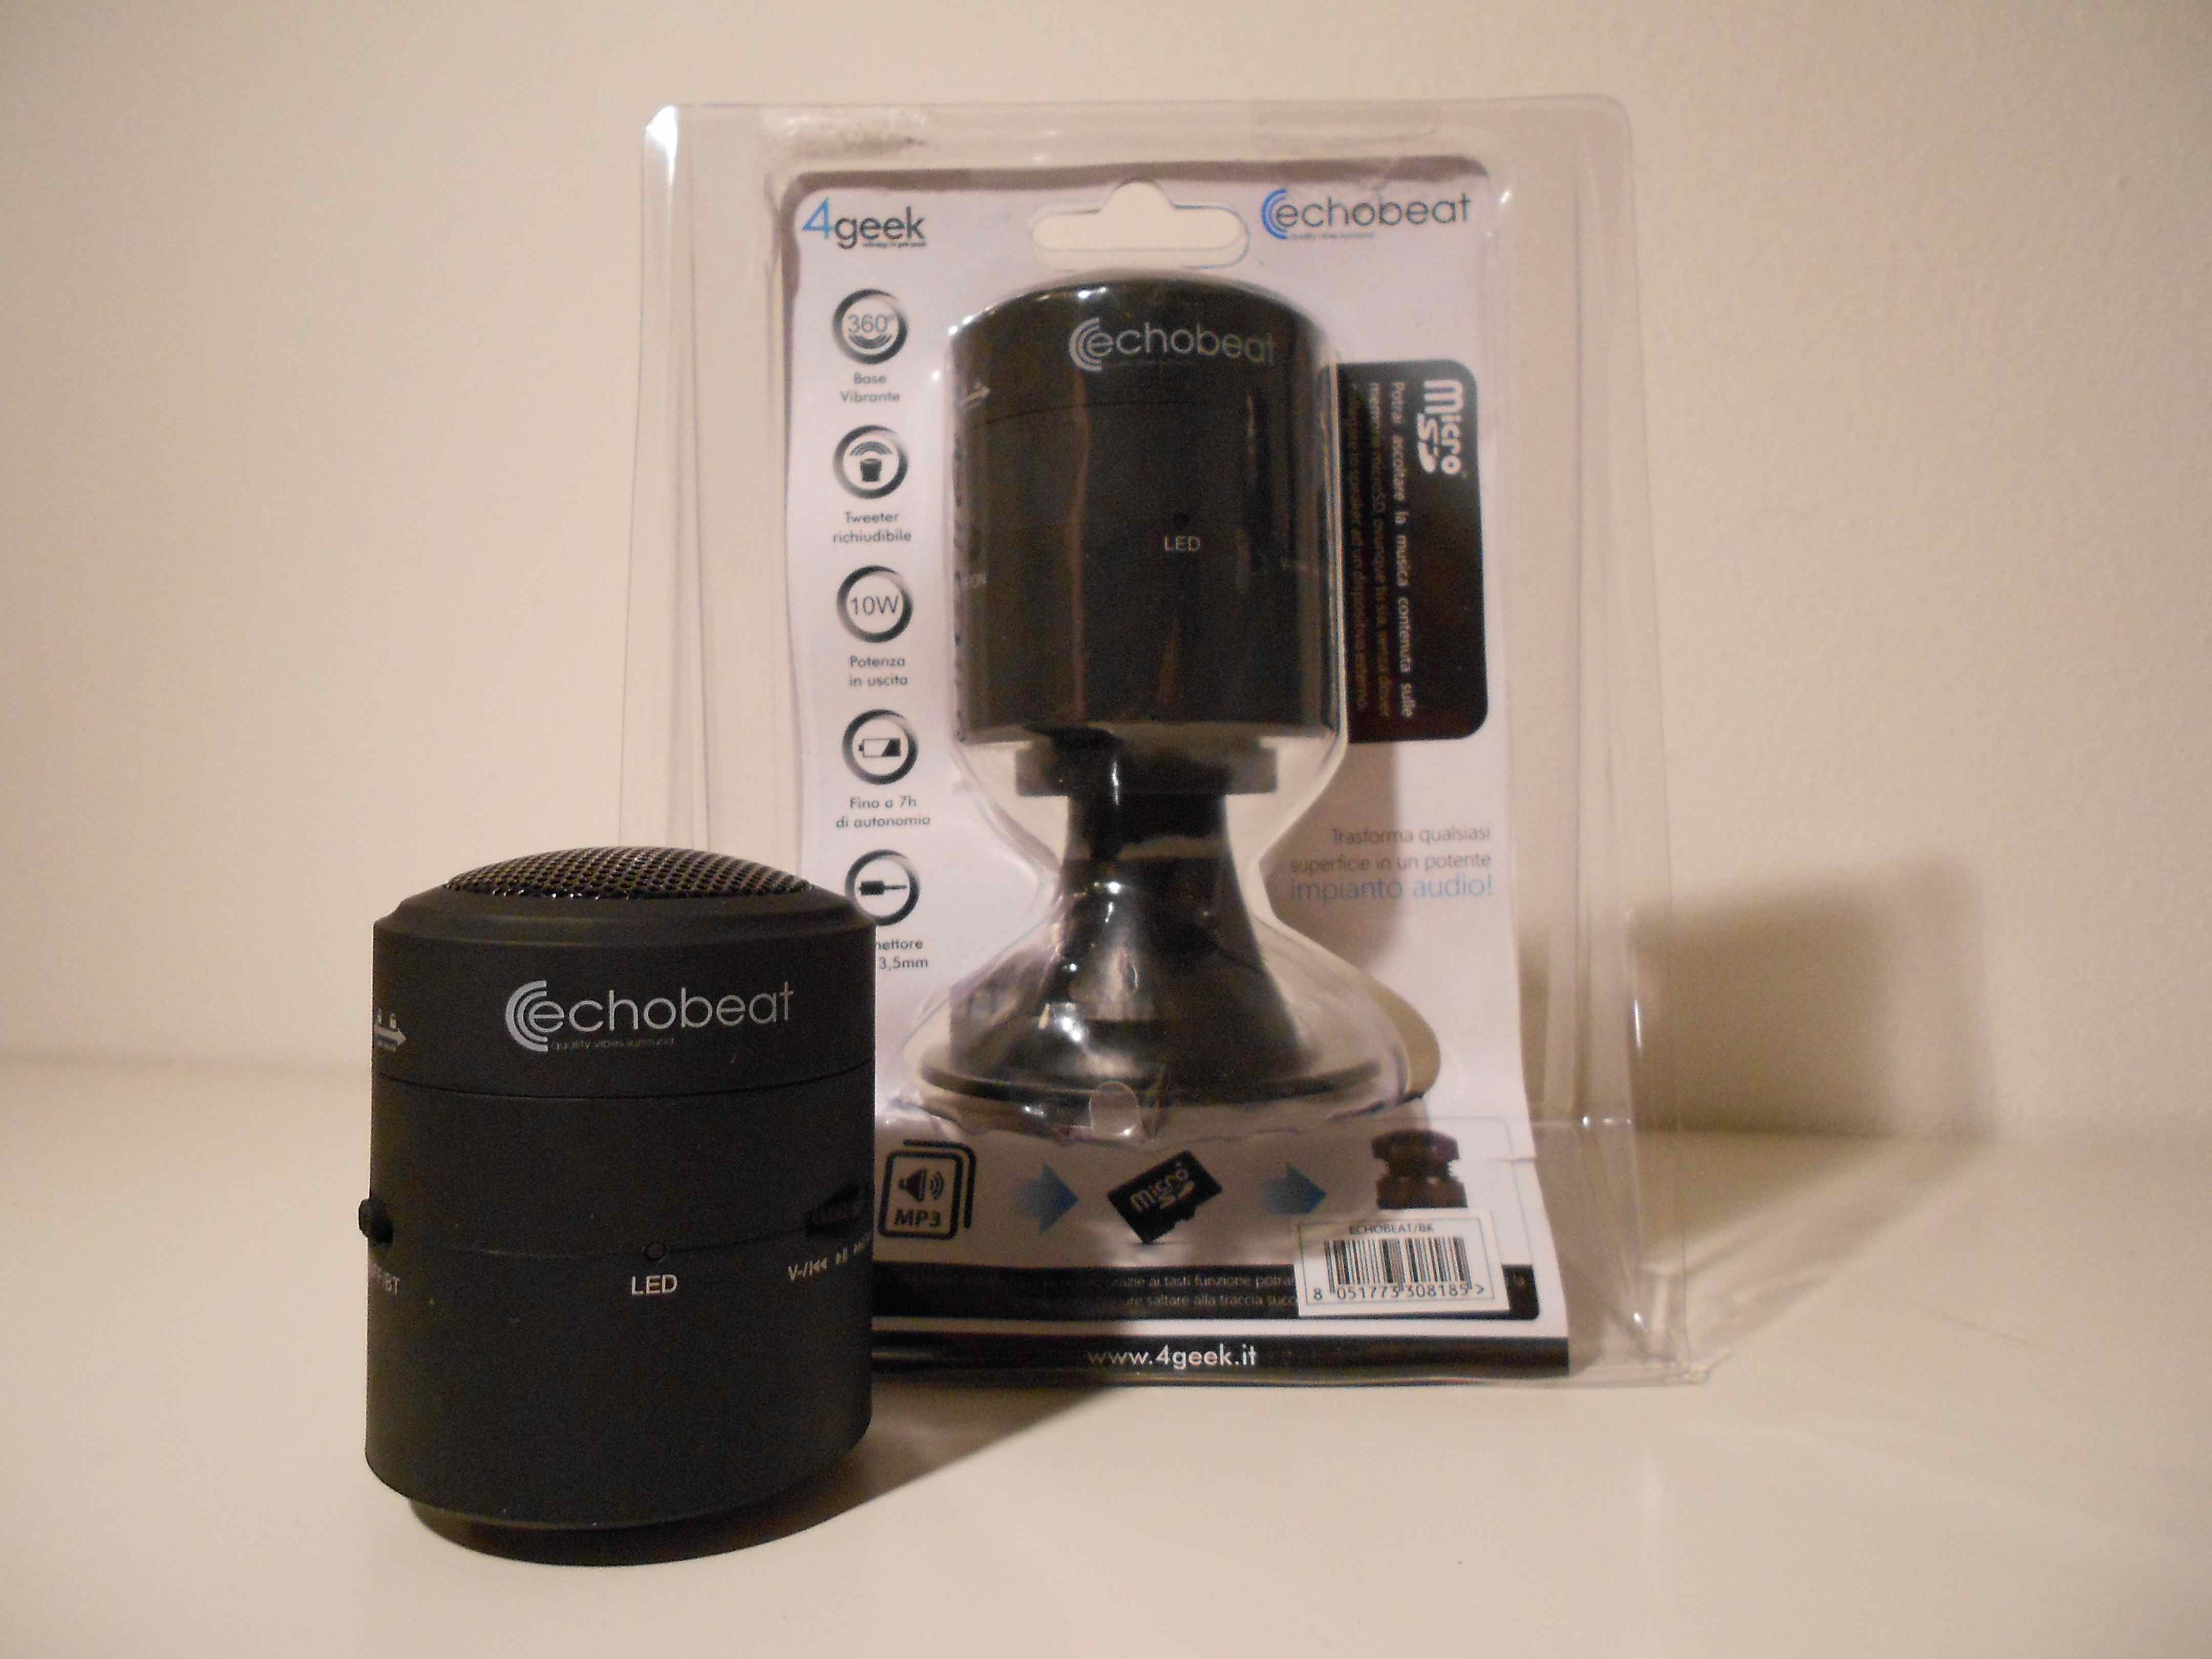 EchoBeat, il mini speaker di 4geek: se non lo appoggi godi (e senti) solo la metà!